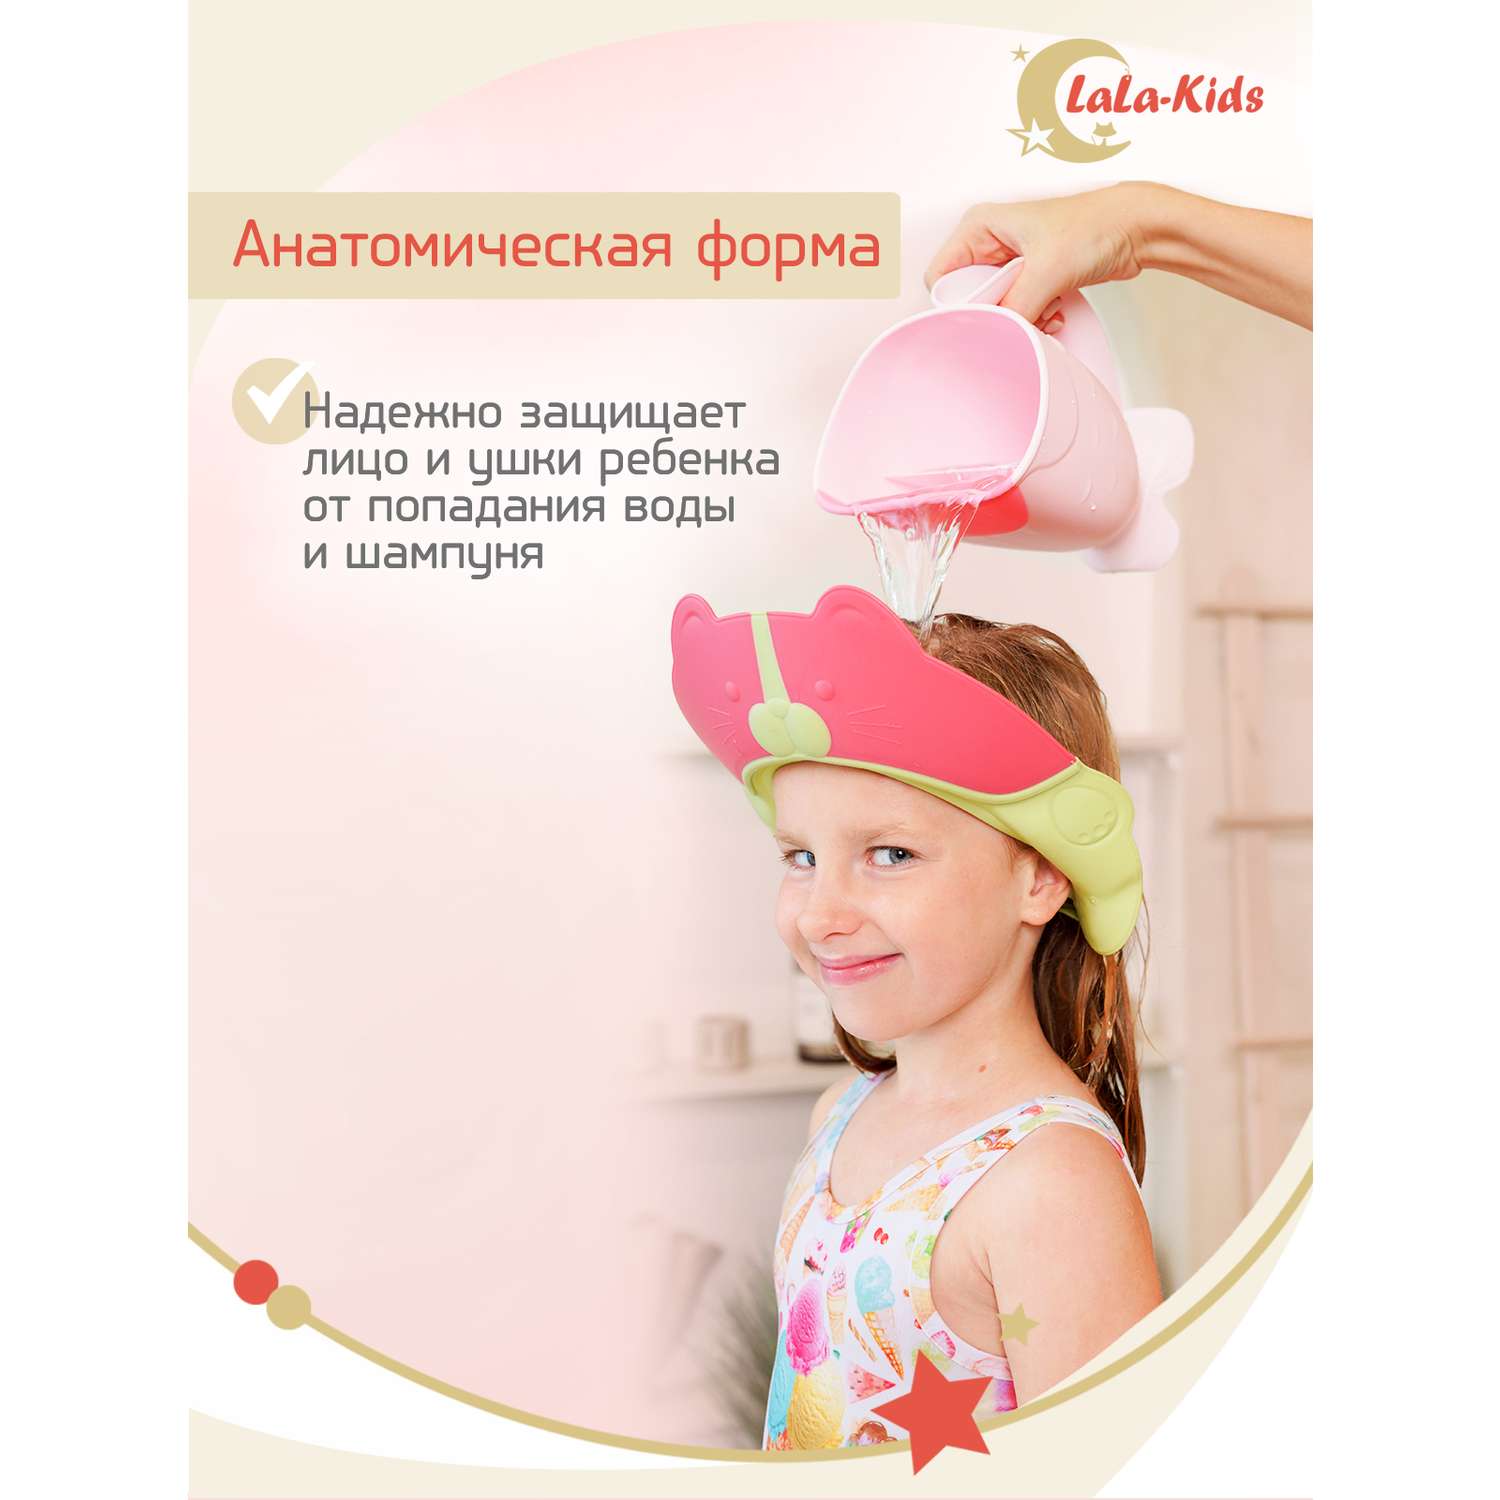 Козырек LaLa-Kids для мытья головы Котик с регулируемым размером - фото 3